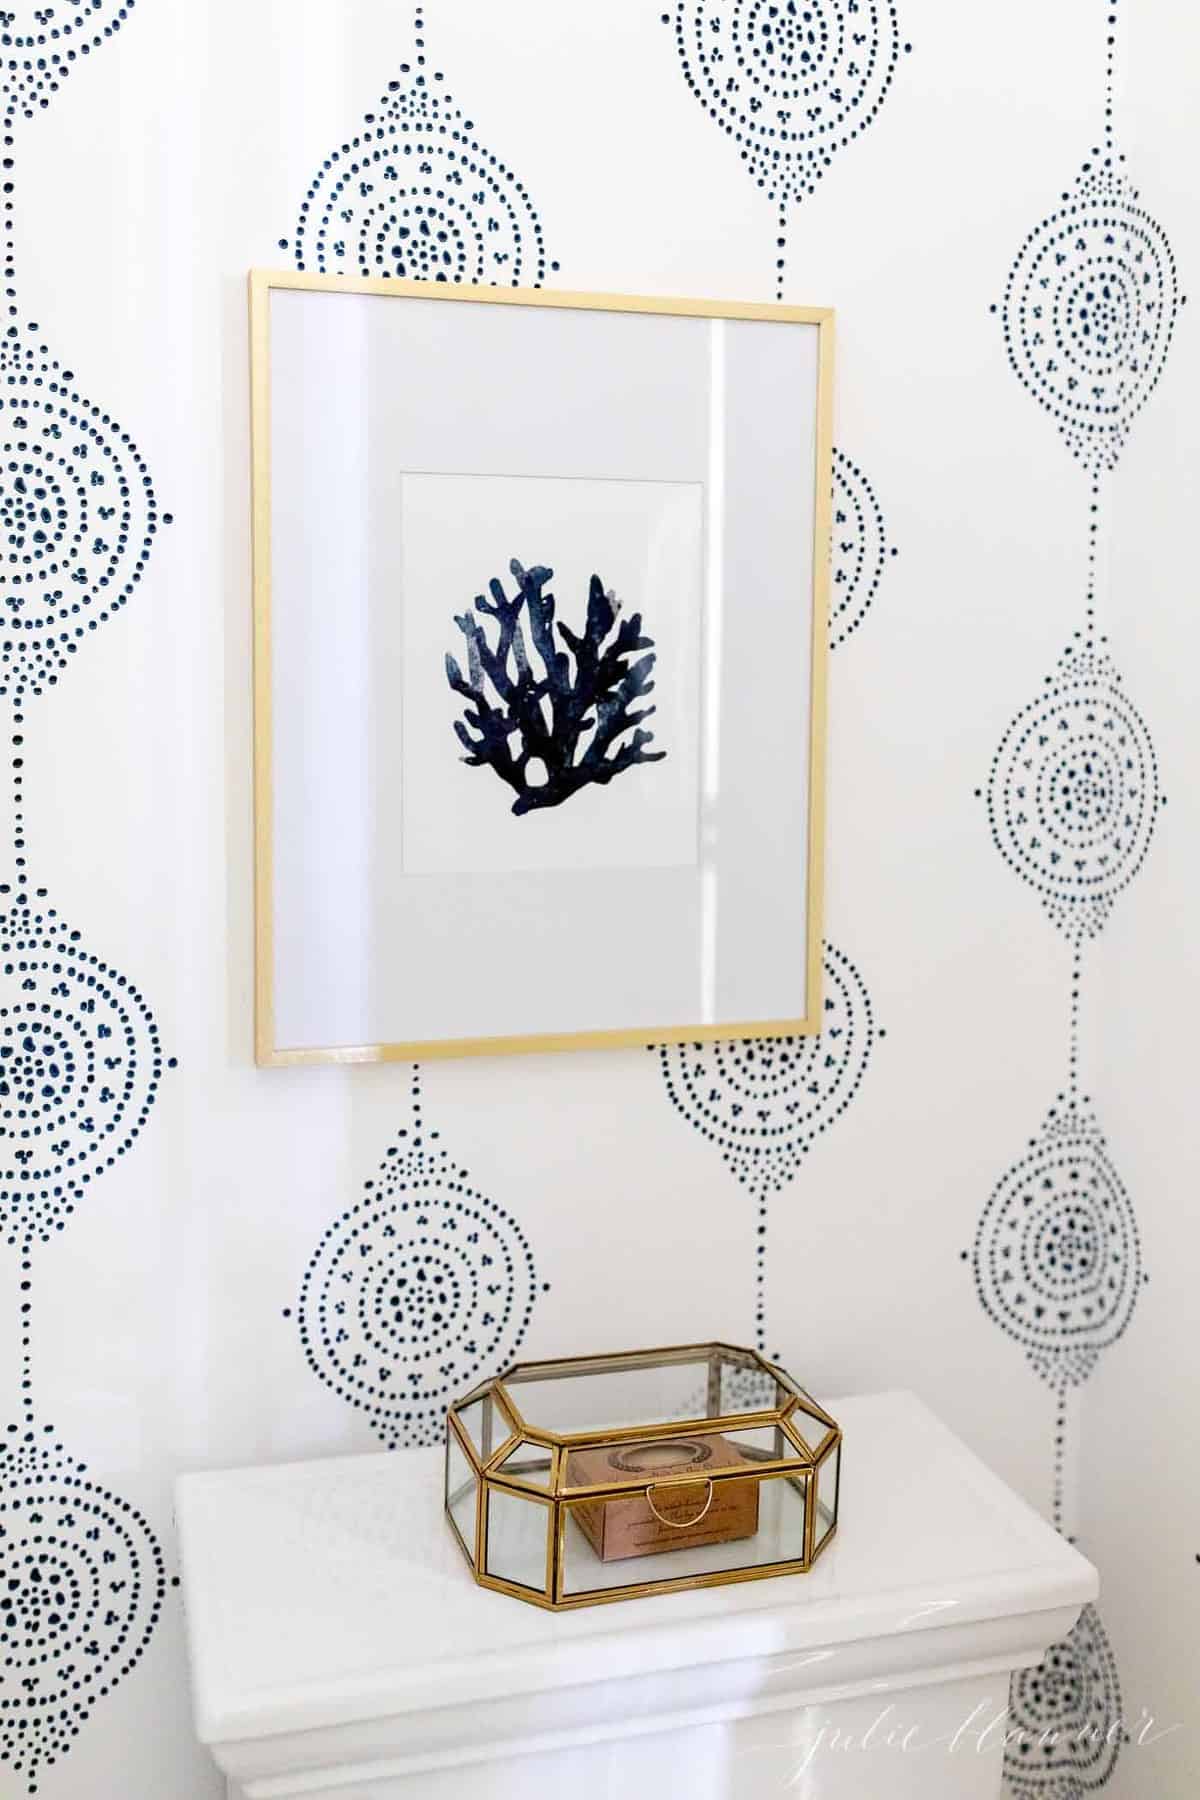 蓝色和白色图案的浴室墙纸，厕所上有贝壳艺术。